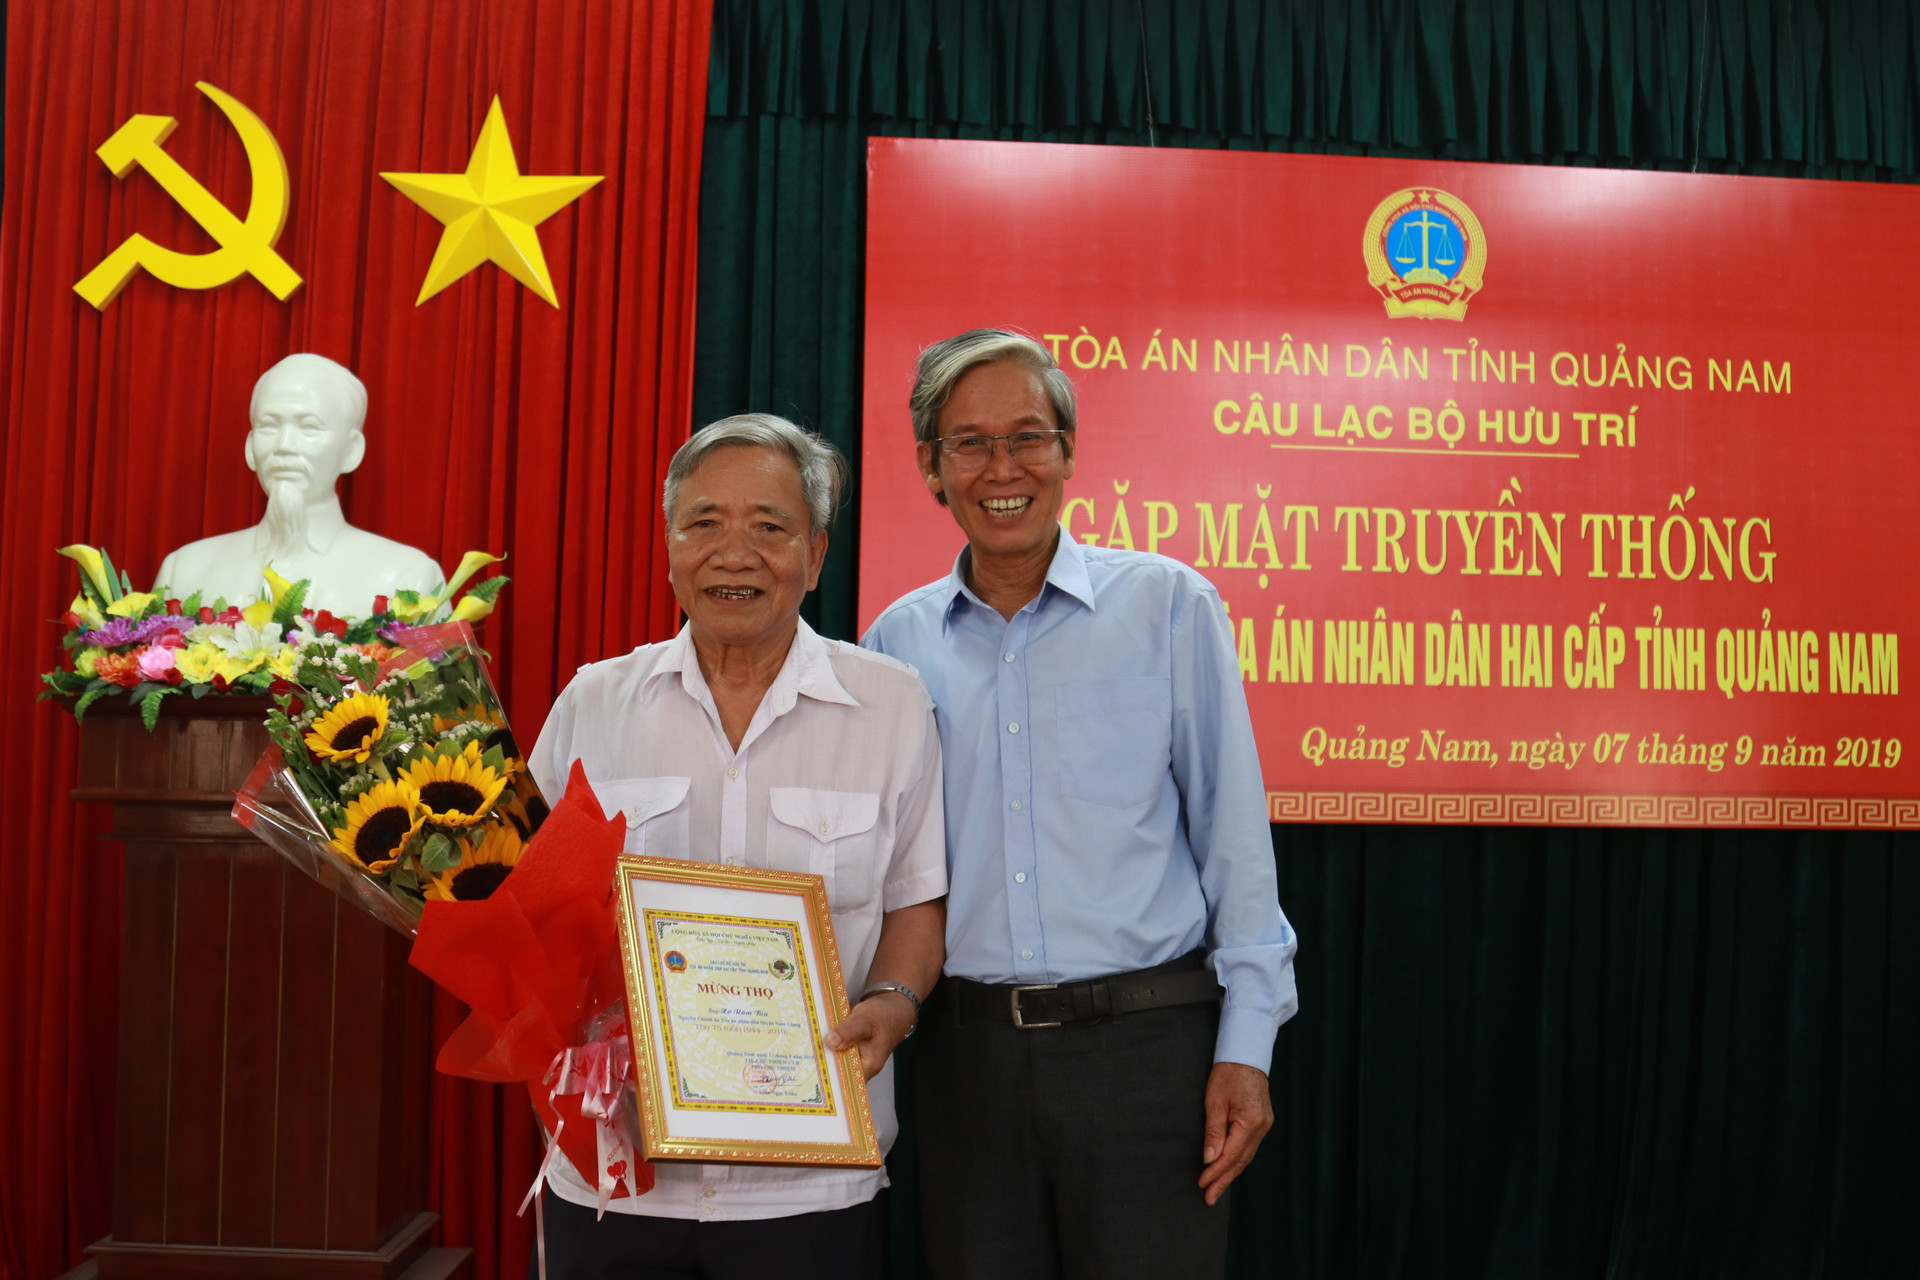 TAND tỉnh Quảng Nam: Nhiều hoạt động kỷ niệm Ngày truyền thống TAND